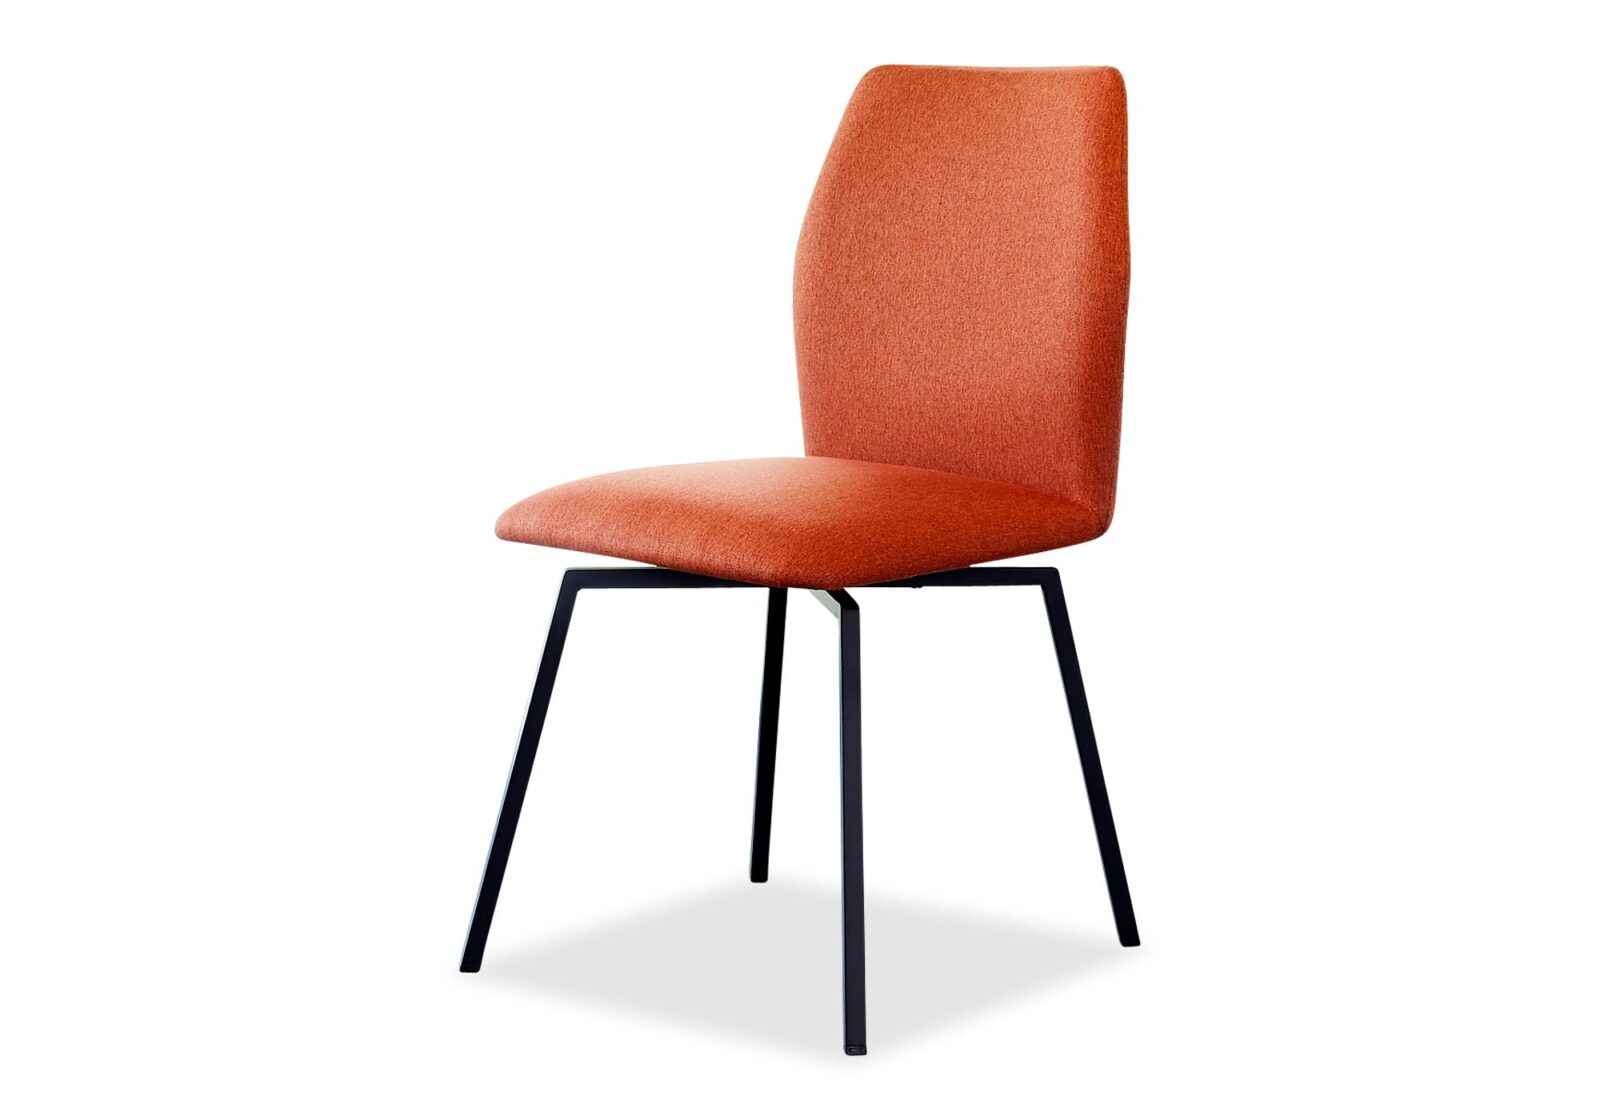 Drehbarer Stuhl Hexa. Bezug: Stoff. Farbe: Orange. Erhältlich bei Möbel Gallati.